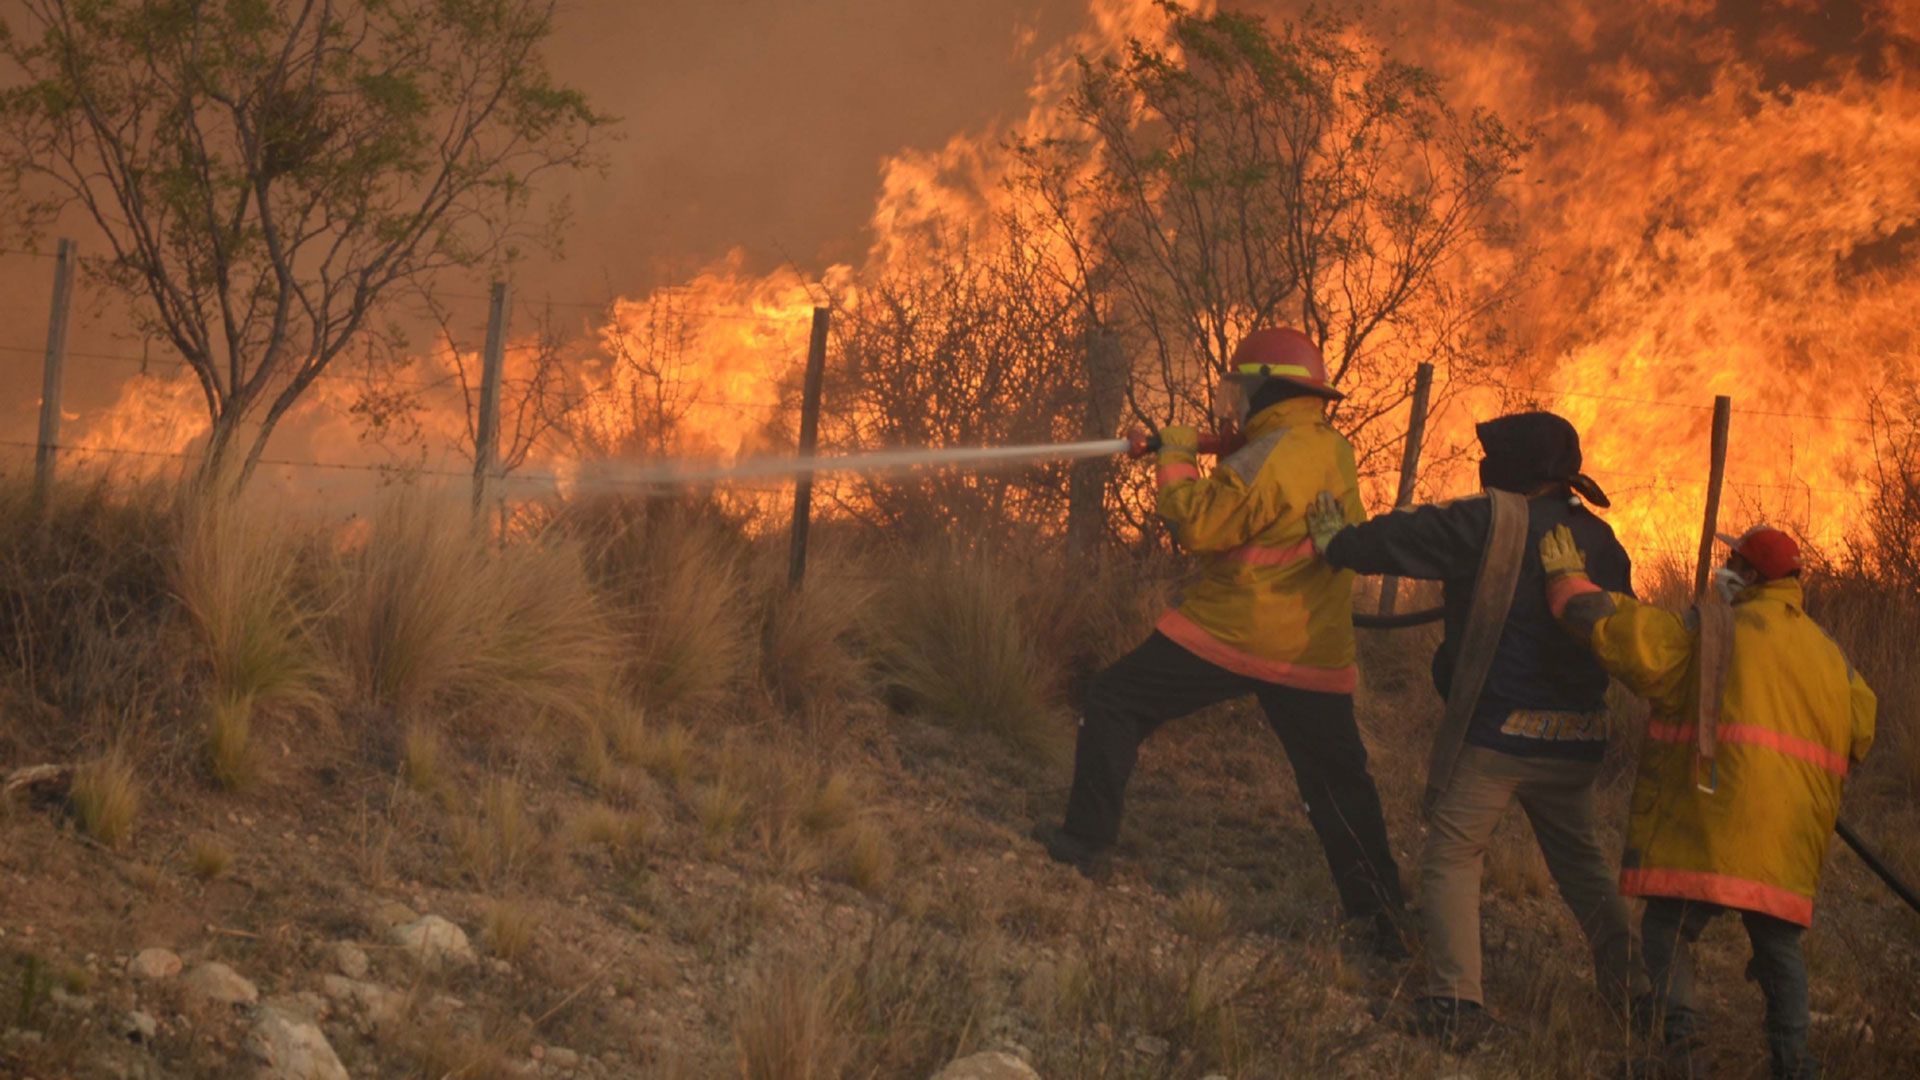 Los especialistas del INTA recomiendan mantener los márgenes de alambrados libre de vegetación, y cuando se realicen quemas de potreros se deberá avisar con 72 horas de antelación a los cuarteles de bomberos más cercanos